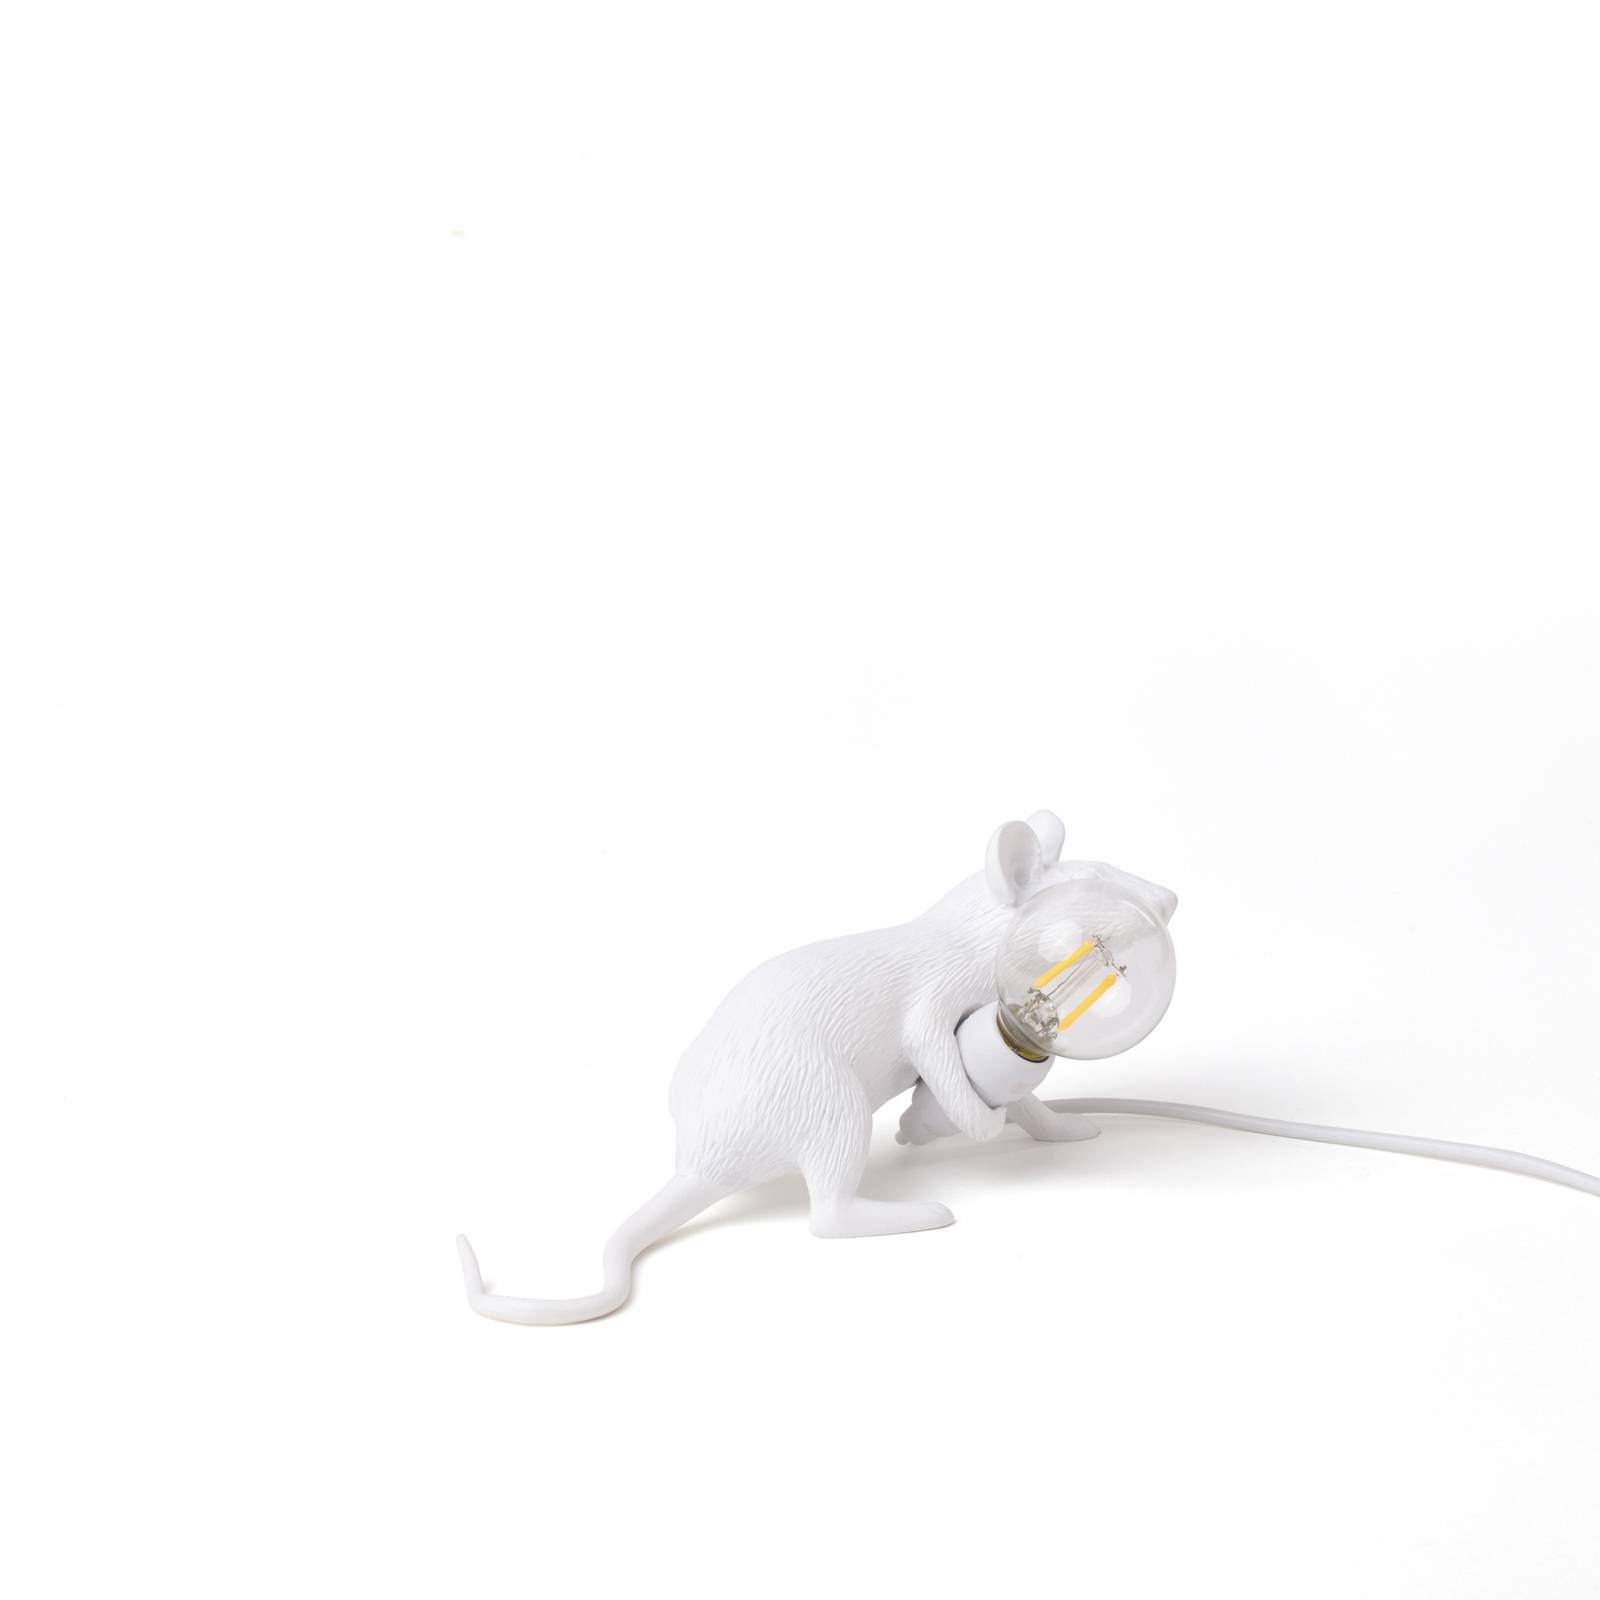 Seletti led asztali világítás mouse lamp usb fekvő fehér